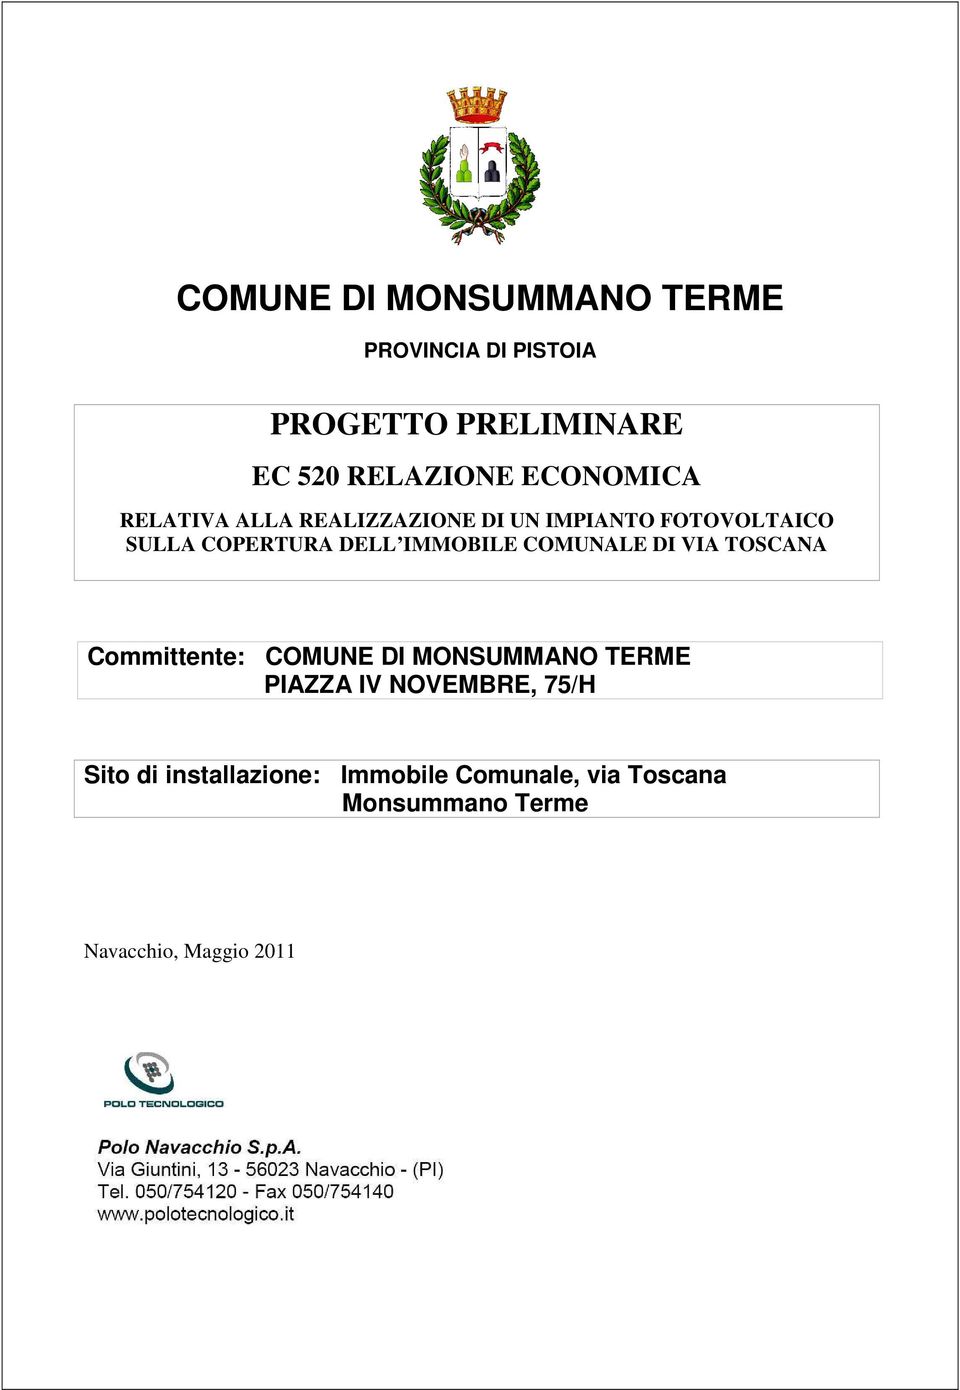 IMMOBILE COMUNALE DI VIA TOSCANA Committente: COMUNE DI MONSUMMANO TERME PIAZZA IV